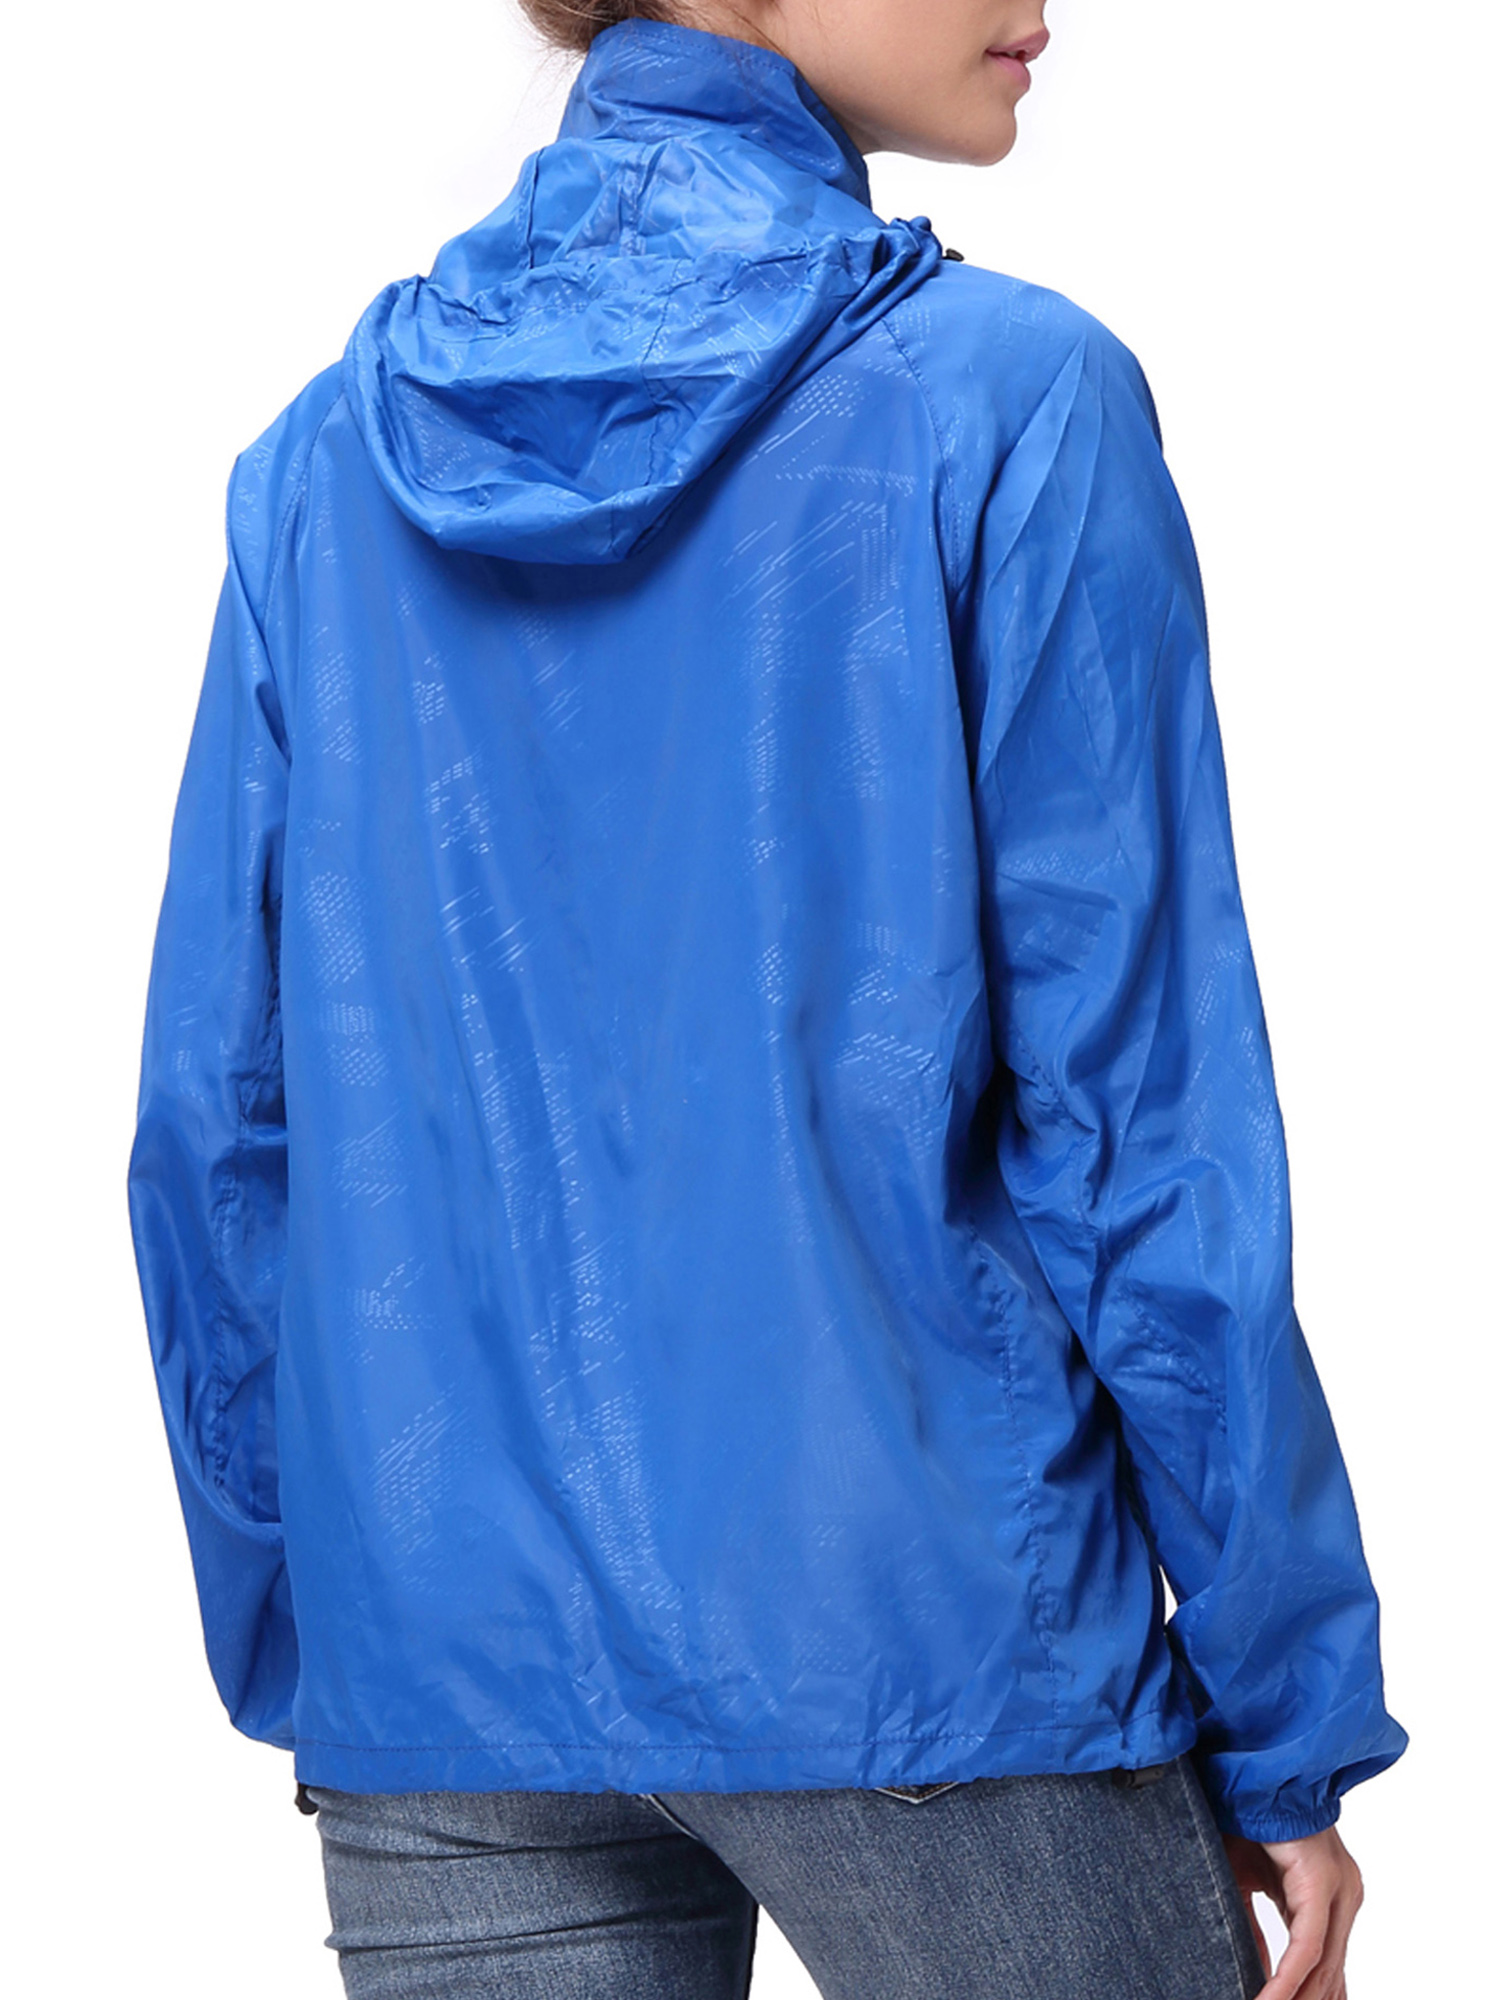 LELINTA Womens Fashion Lightweight Jacket Waterproof Windbreaker Packable Jacket Classic Zipper-Up Hoodie Active Sportswear - image 3 of 9